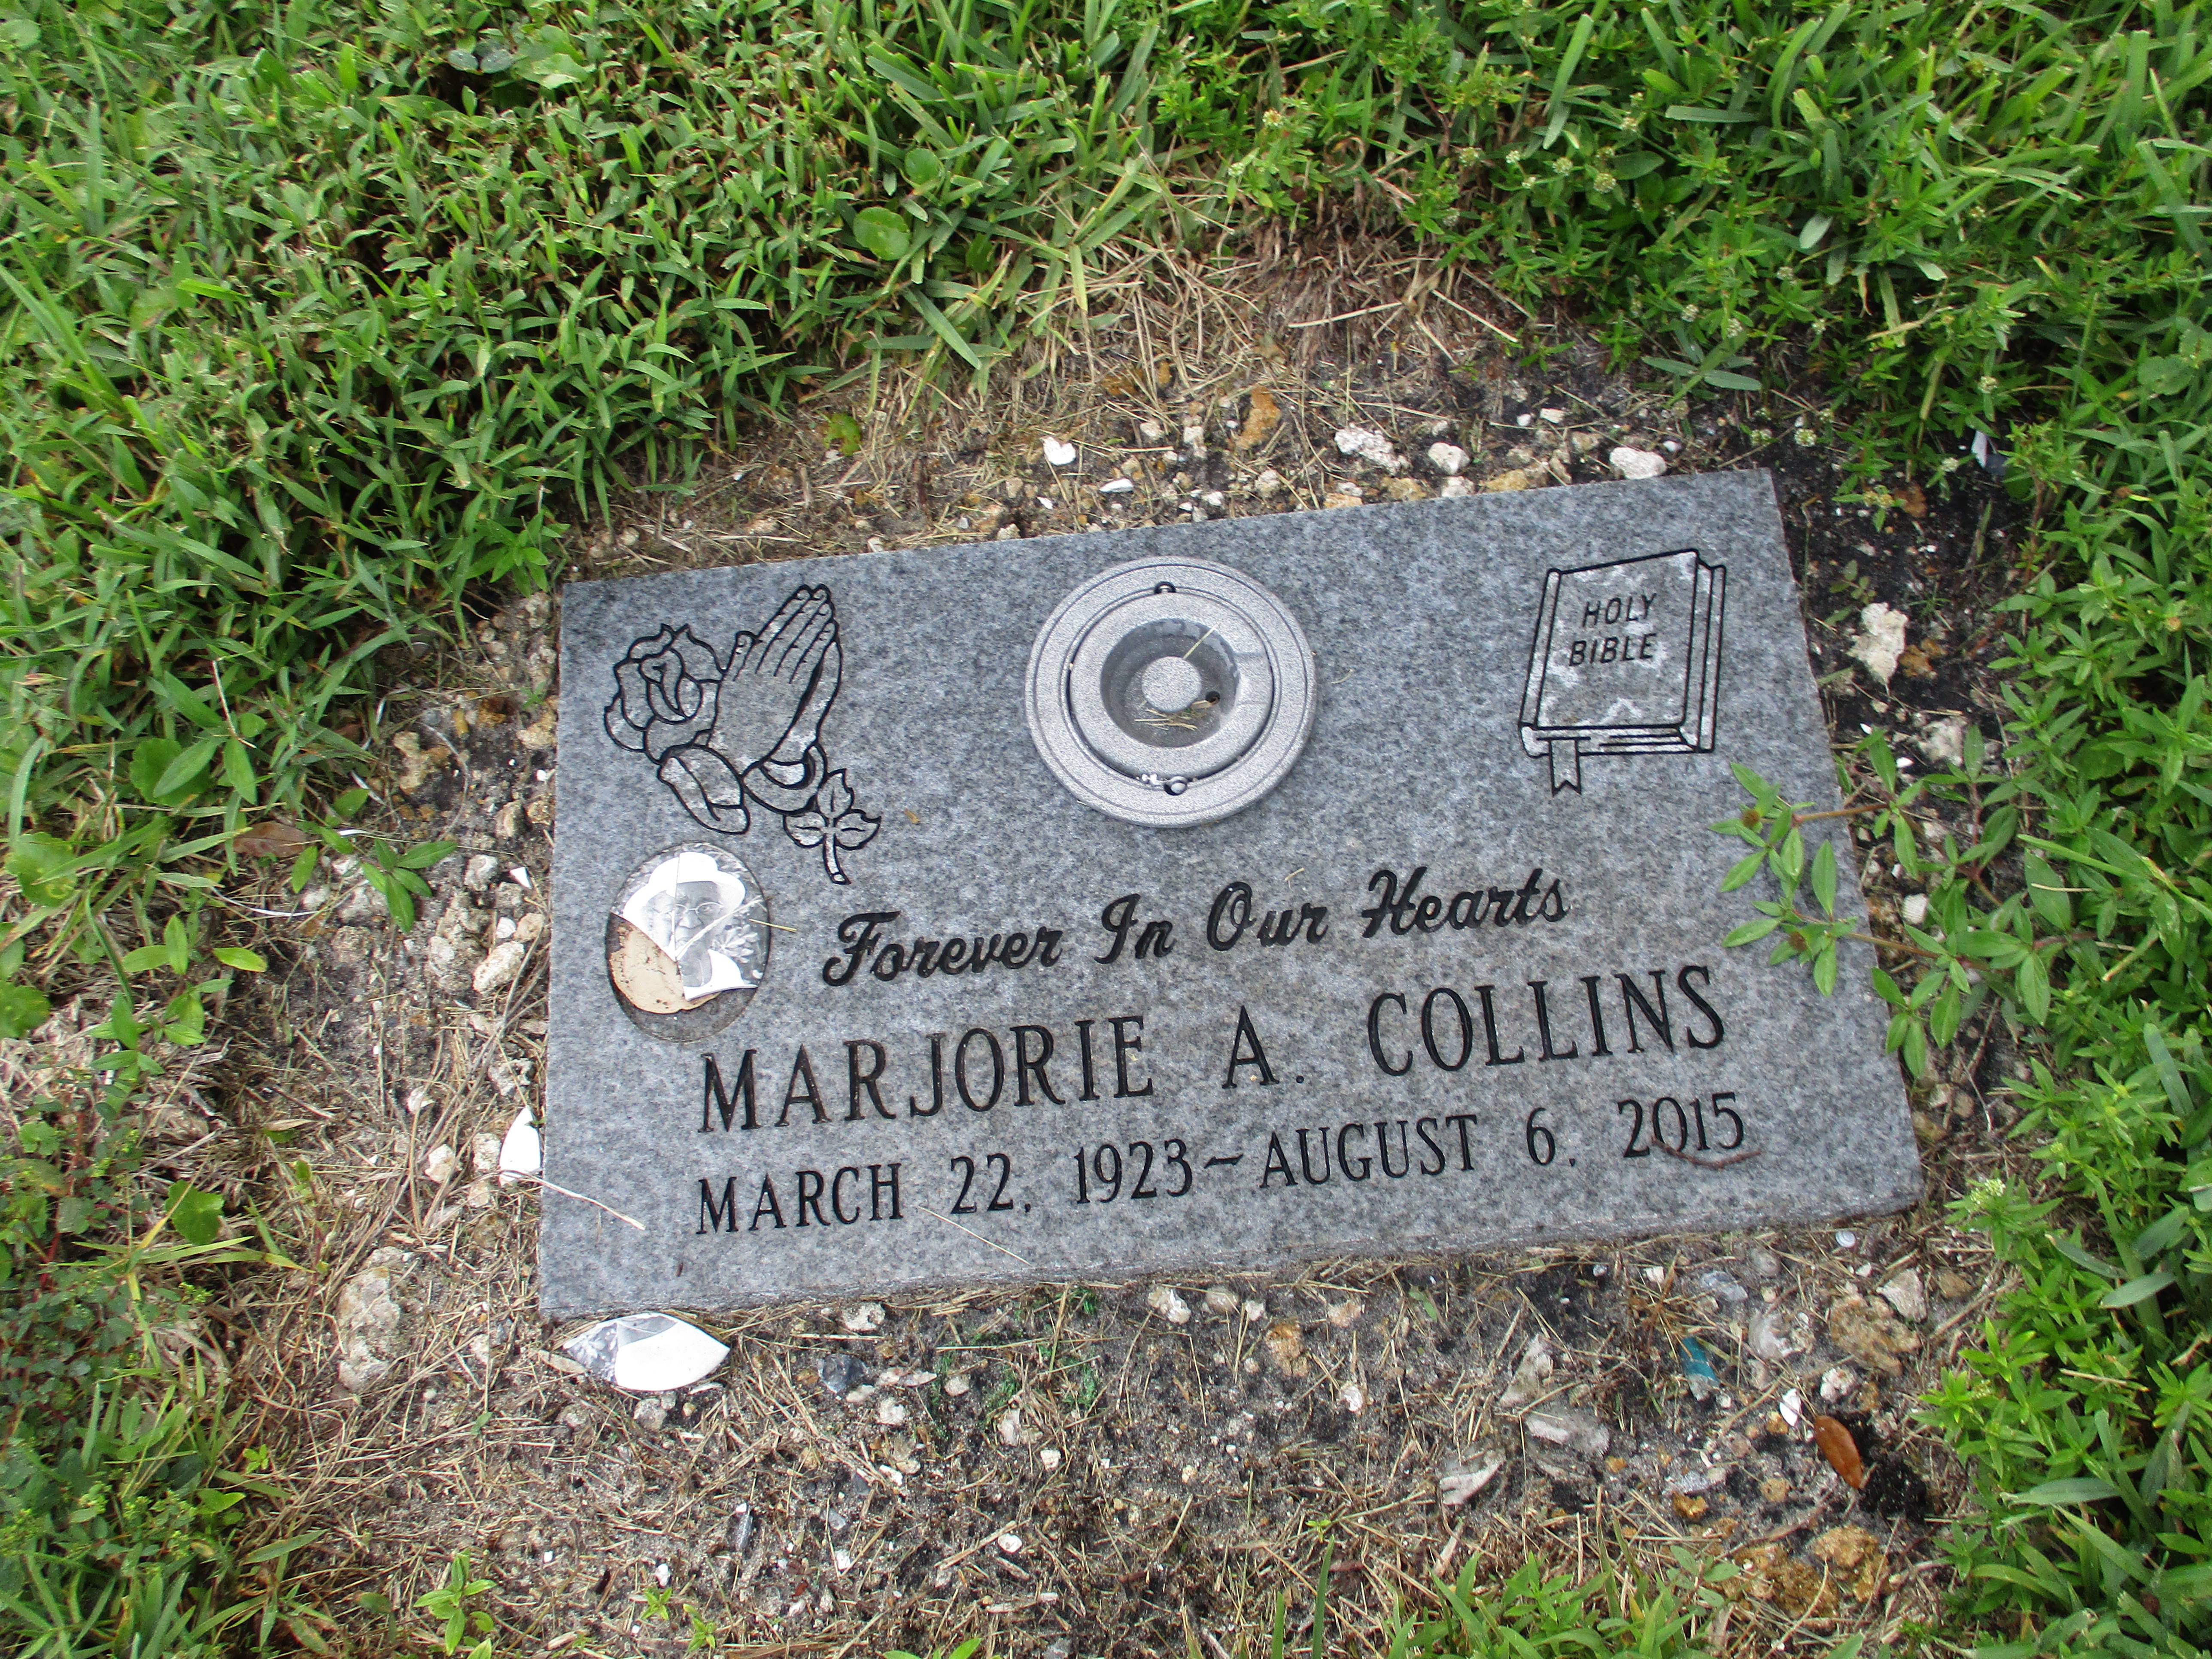 Marjorie A Collins